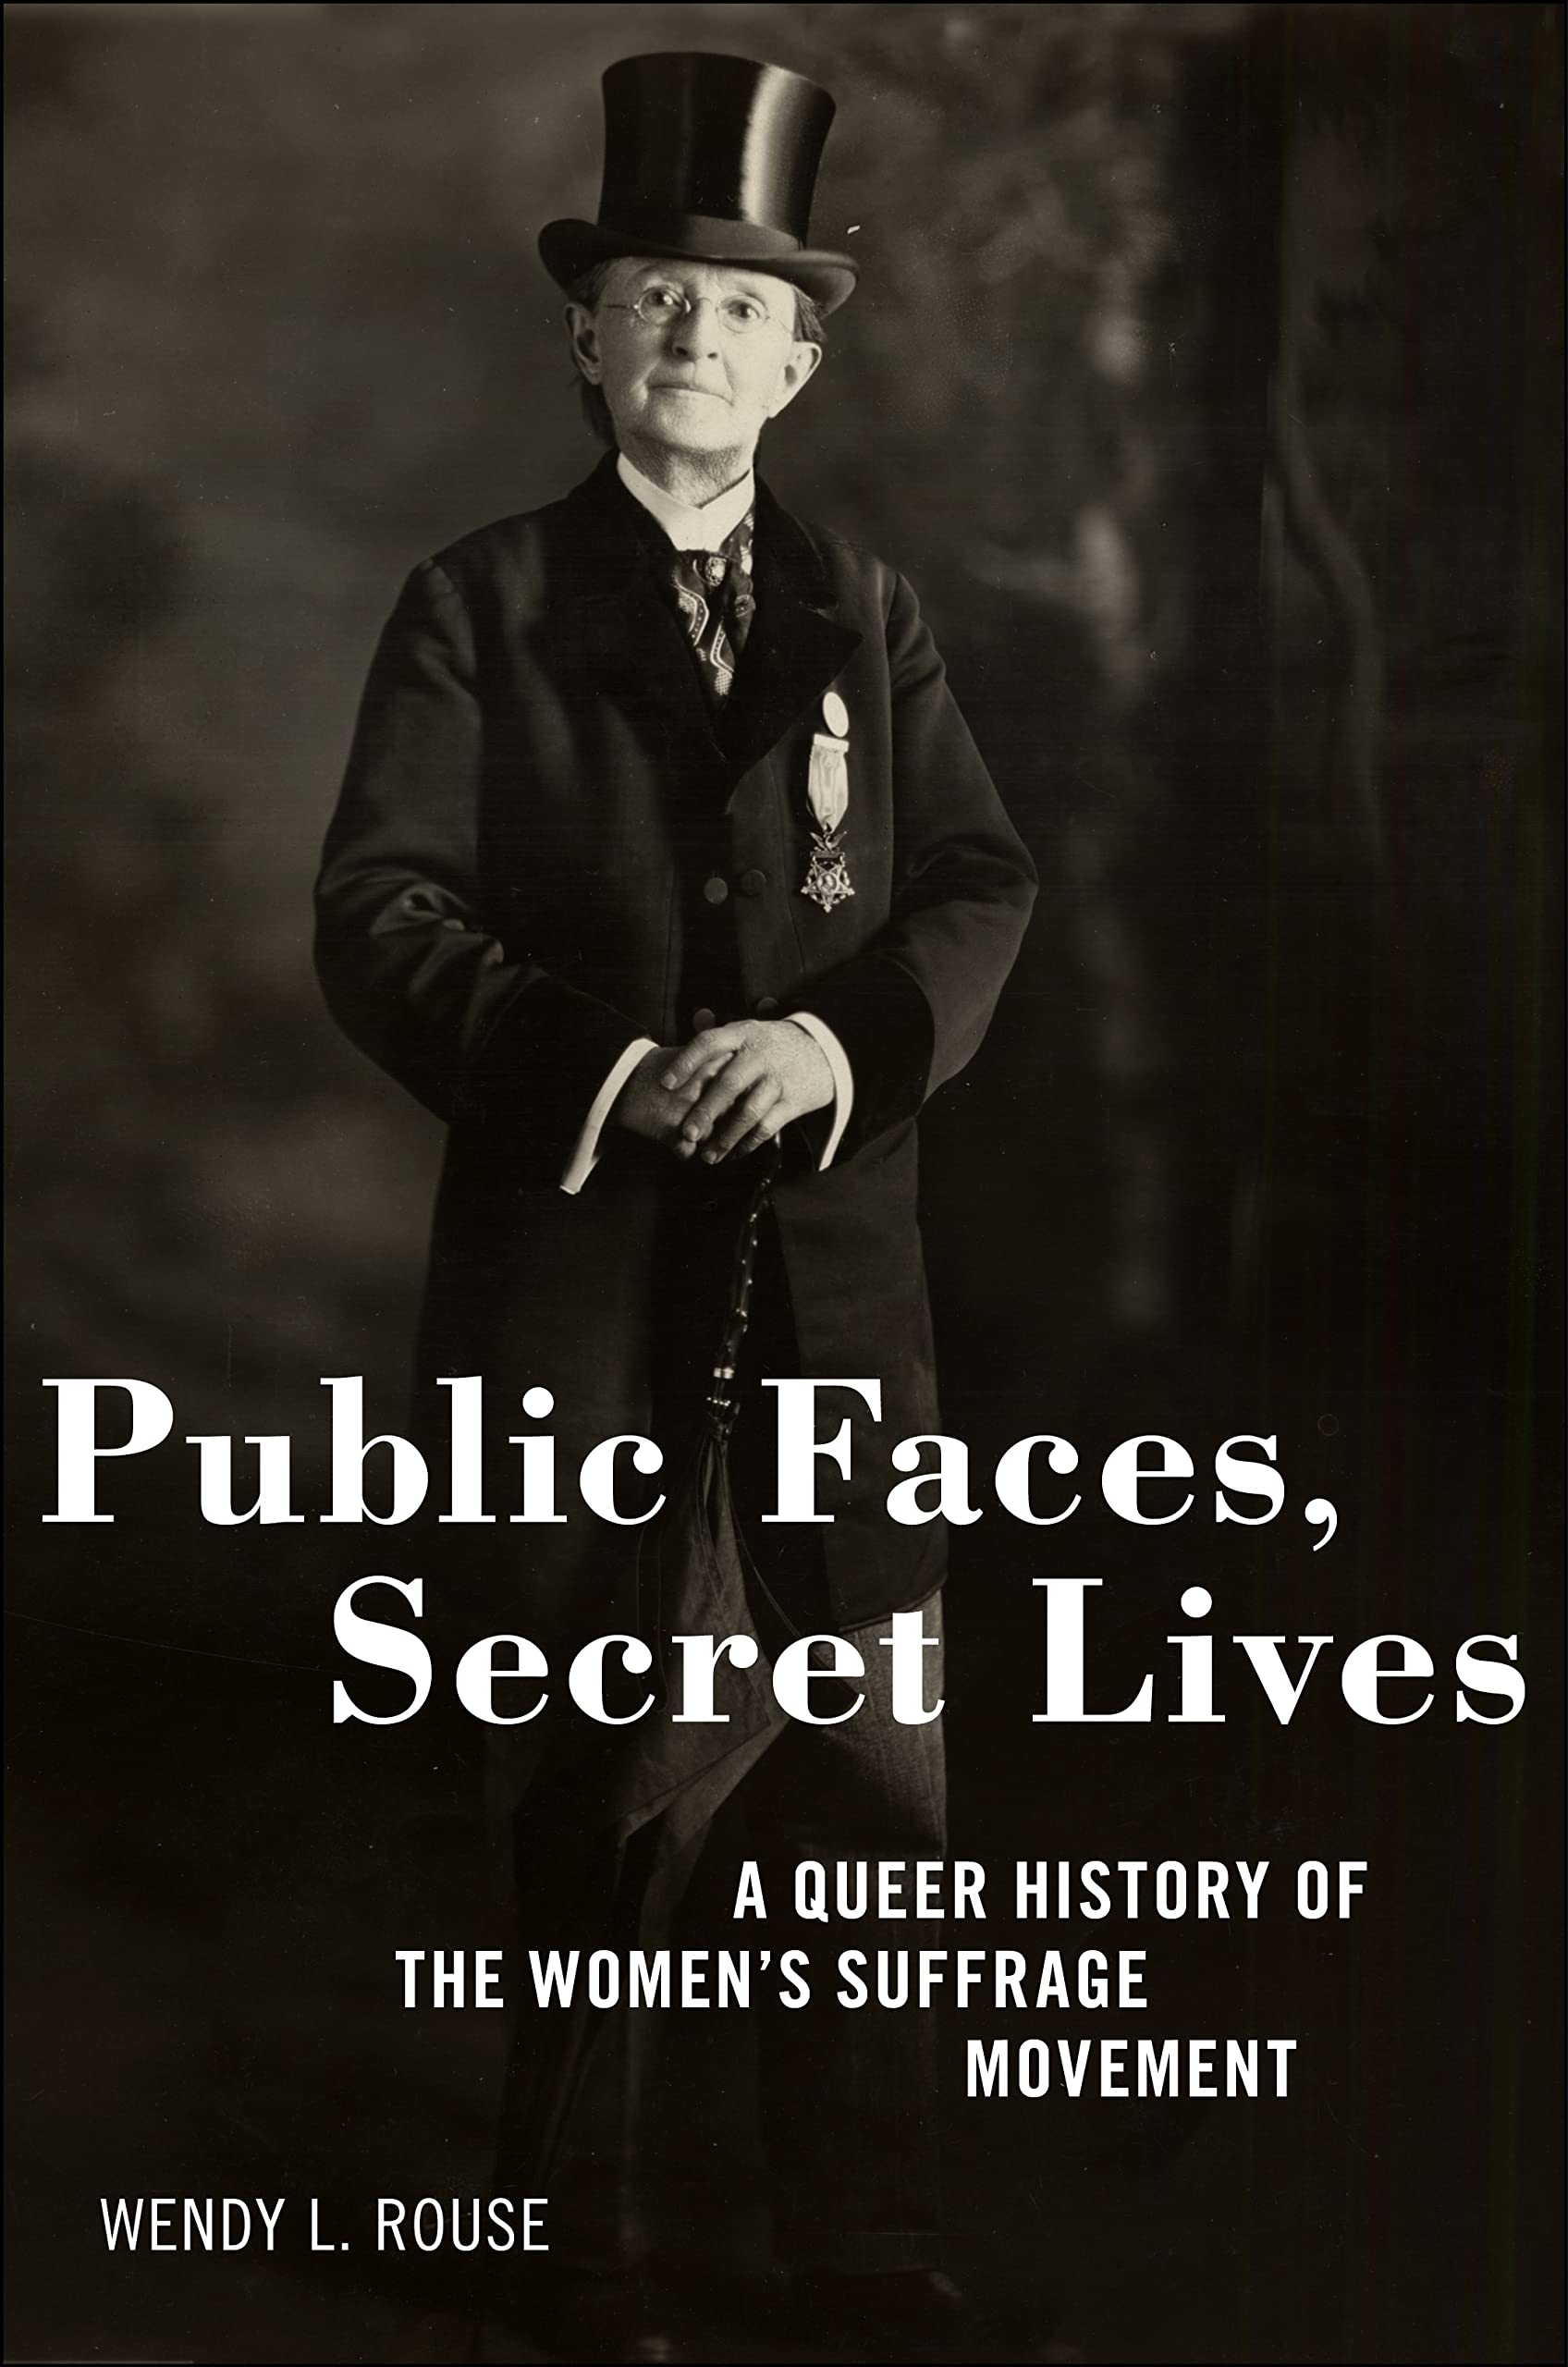 Public faces, secret lives